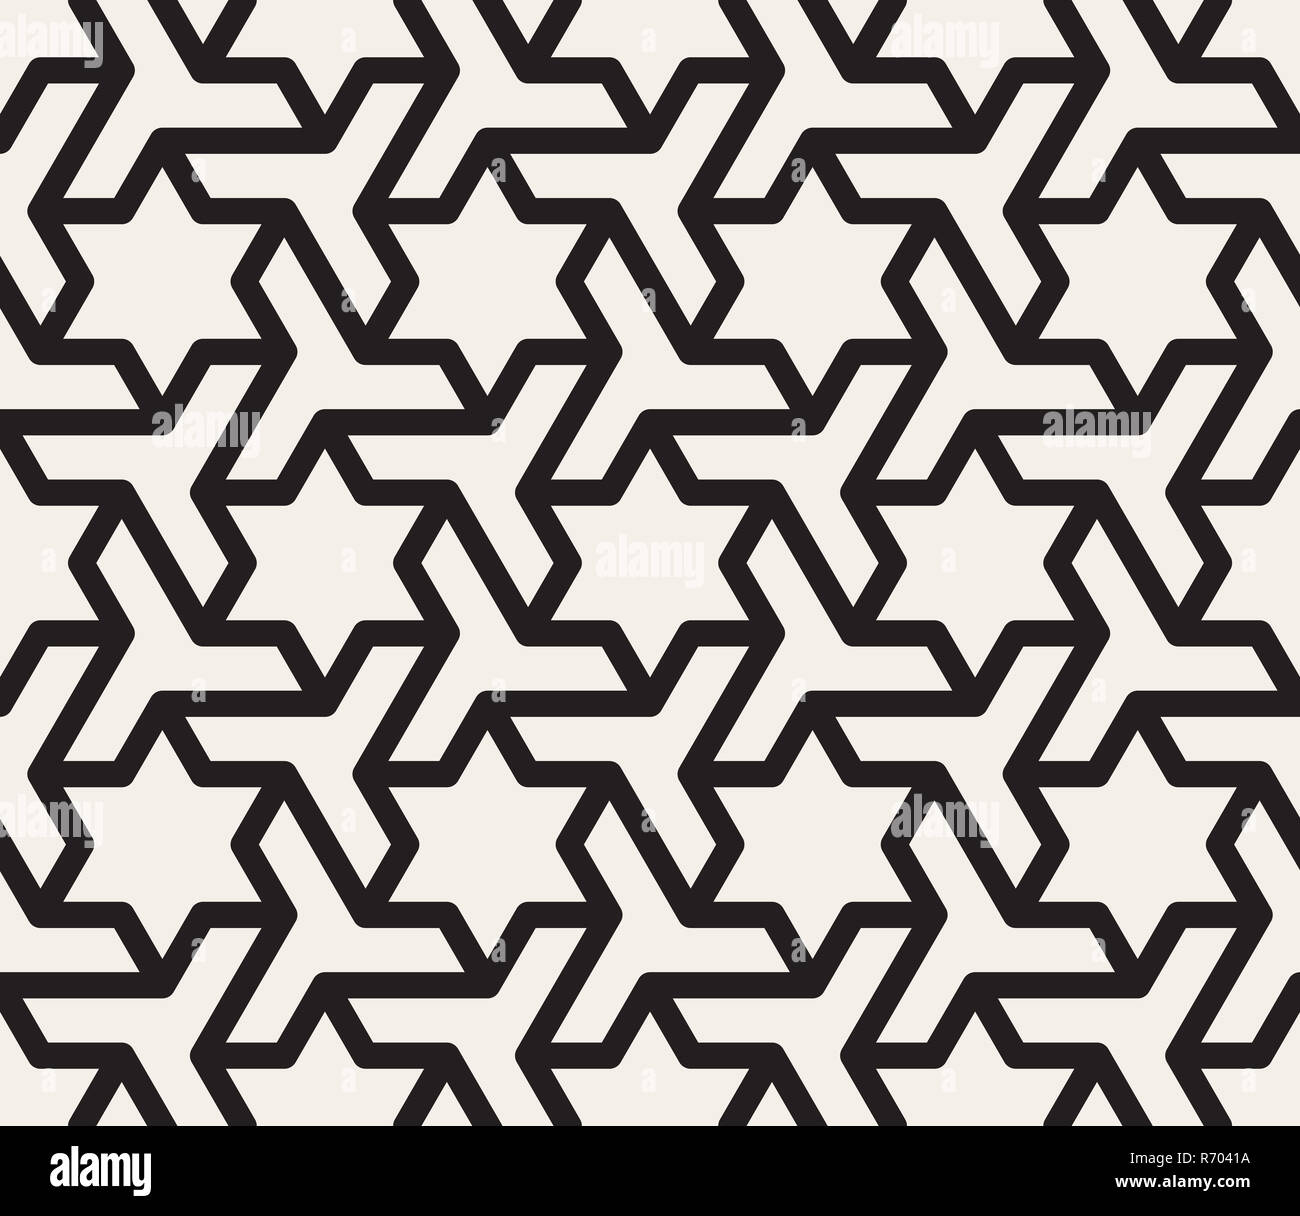 Nahtlose schwarz-weiß geometrische Stern Dreieck Form Tessellation Vektormuster Stockfoto